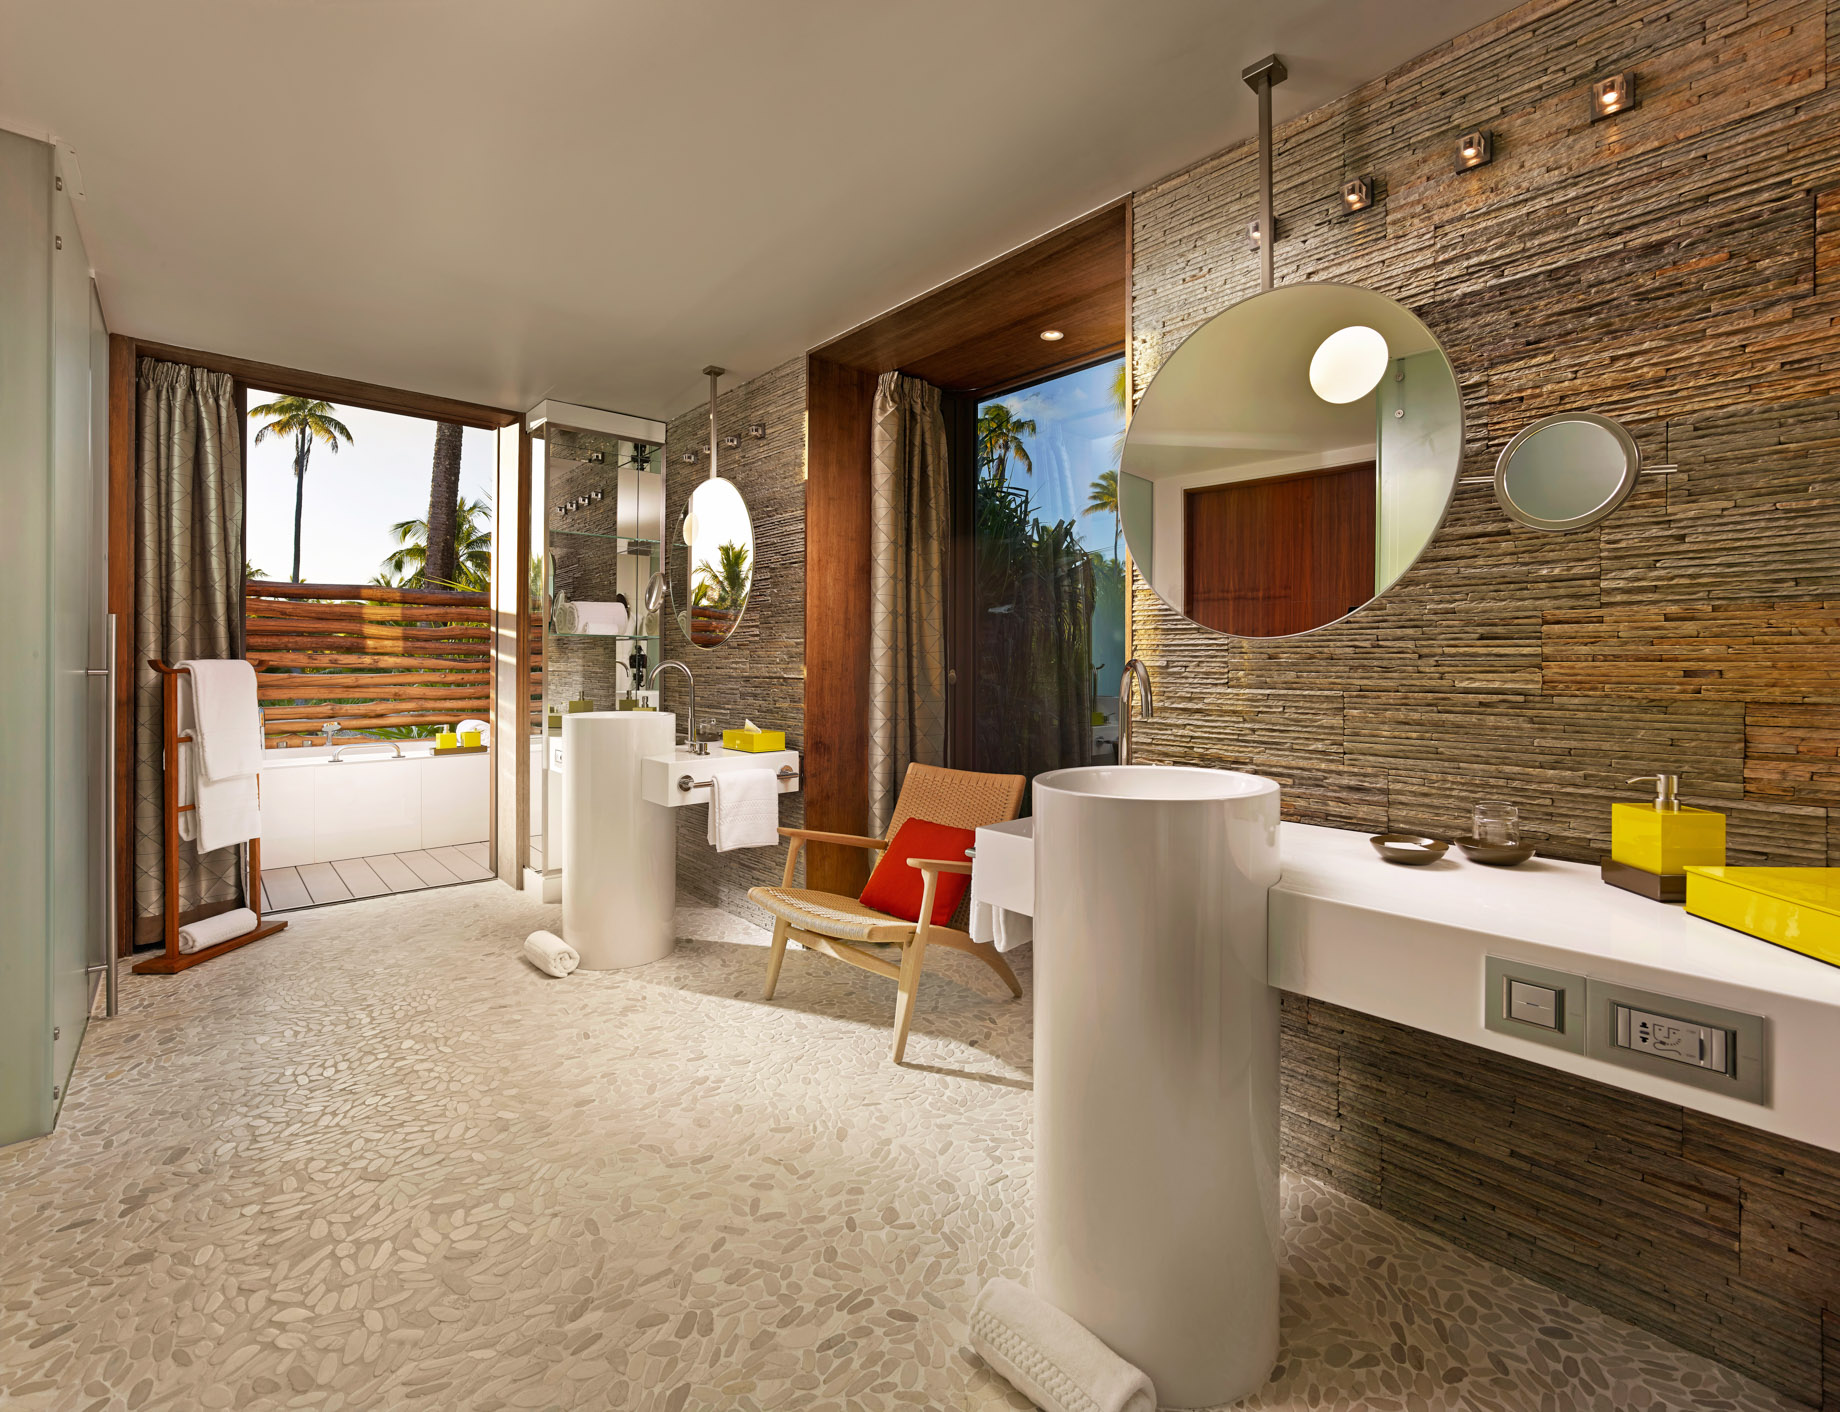 The Brando Resort – Tetiaroa Private Island, French Polynesia – 2 Bedroom Beachfront Villa Bathroom